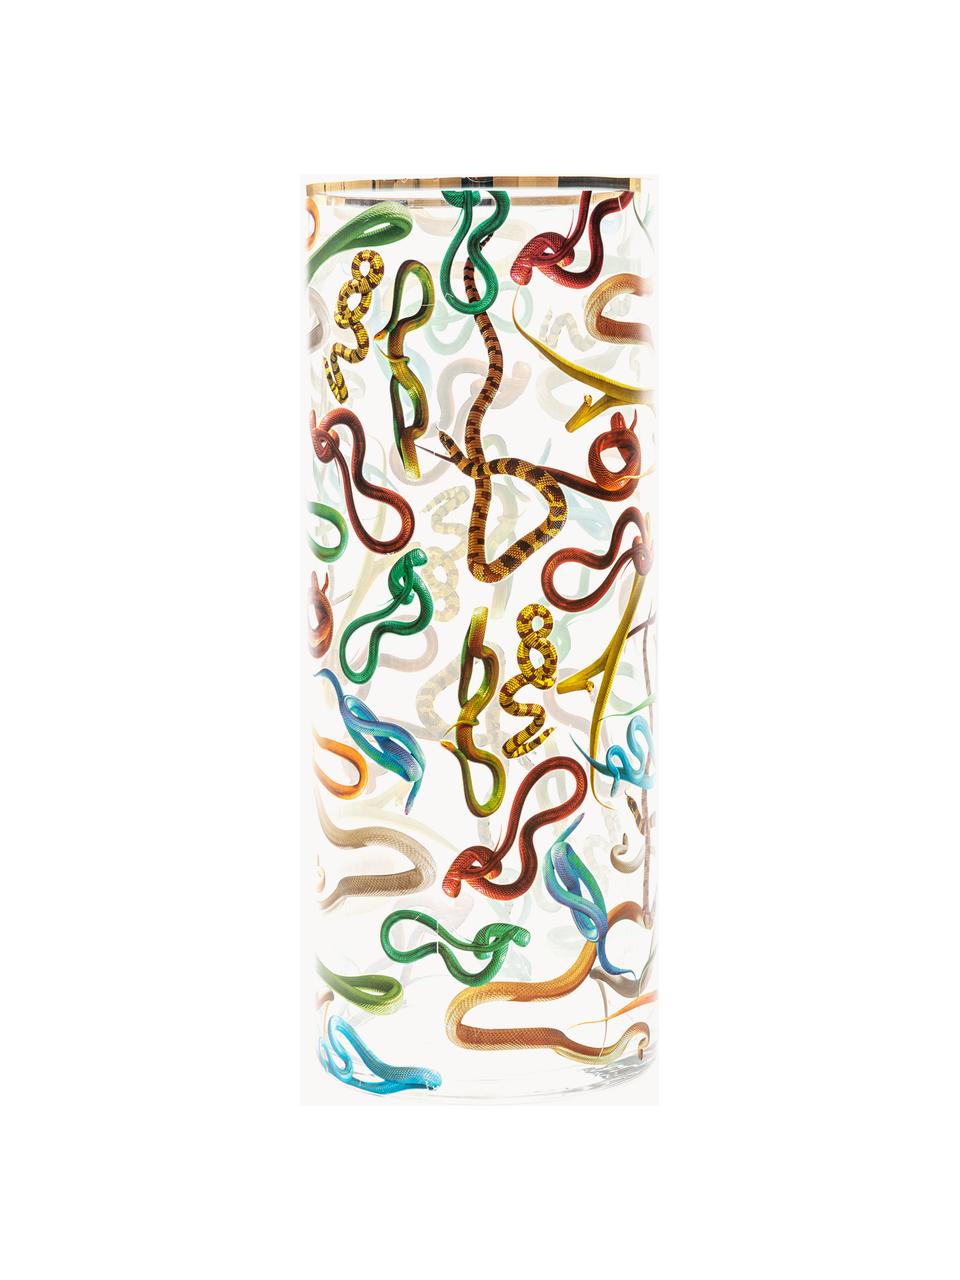 Skleněná váza Snakes, V 50 cm, Snakes, Ø 20 cm, V 50 cm